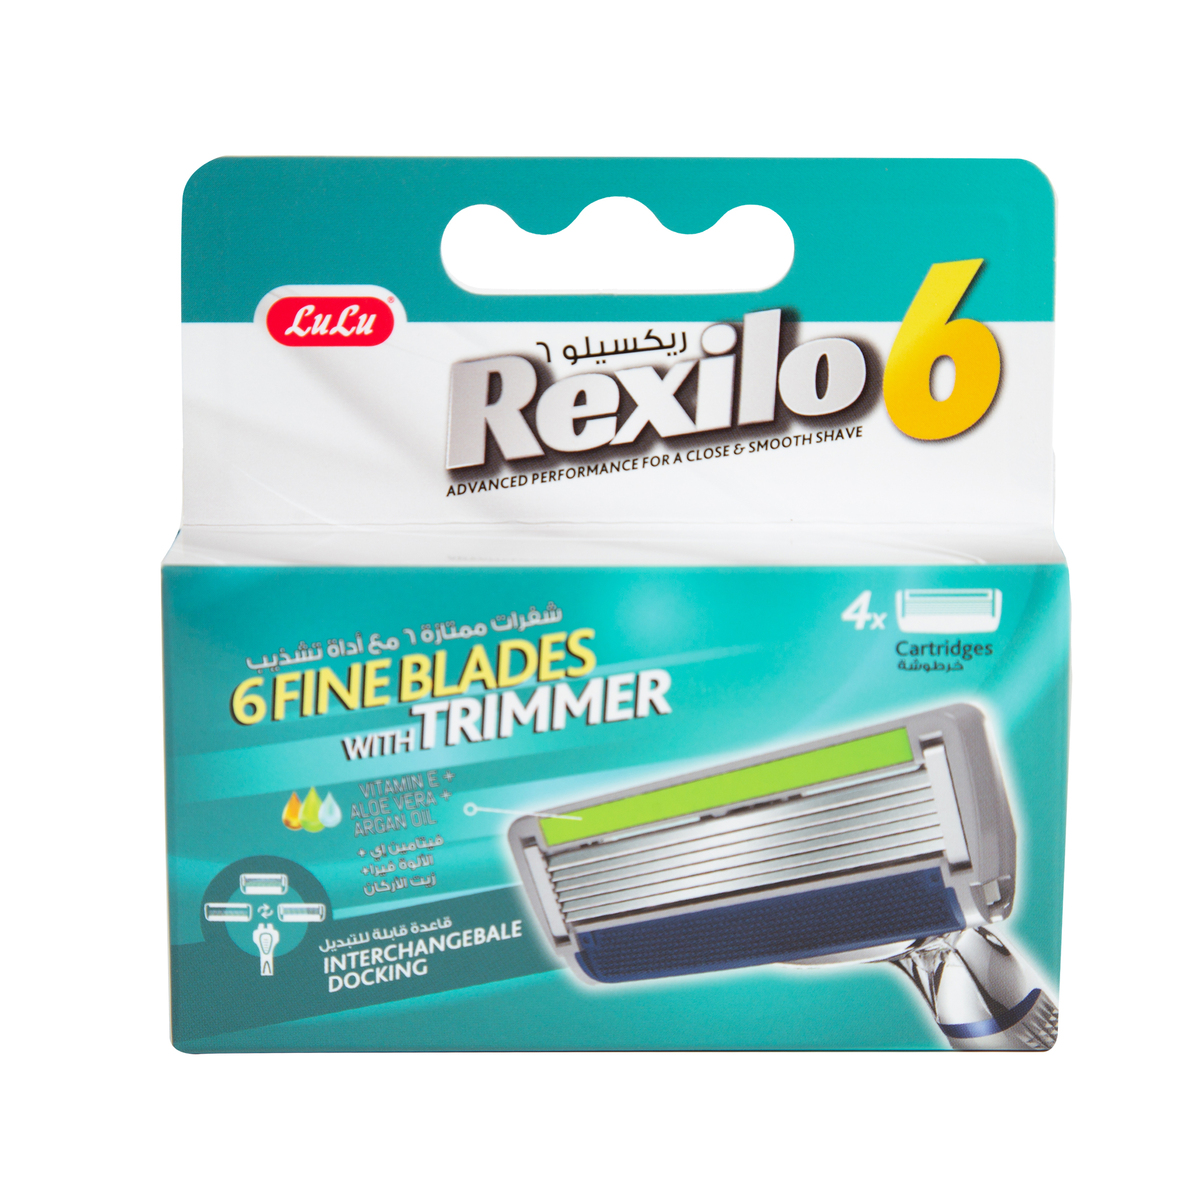 Buy LuLu Rexilo 6 Razor Cartridges Blades 4 pcs Online at Best Price | System Blades | Lulu UAE in UAE